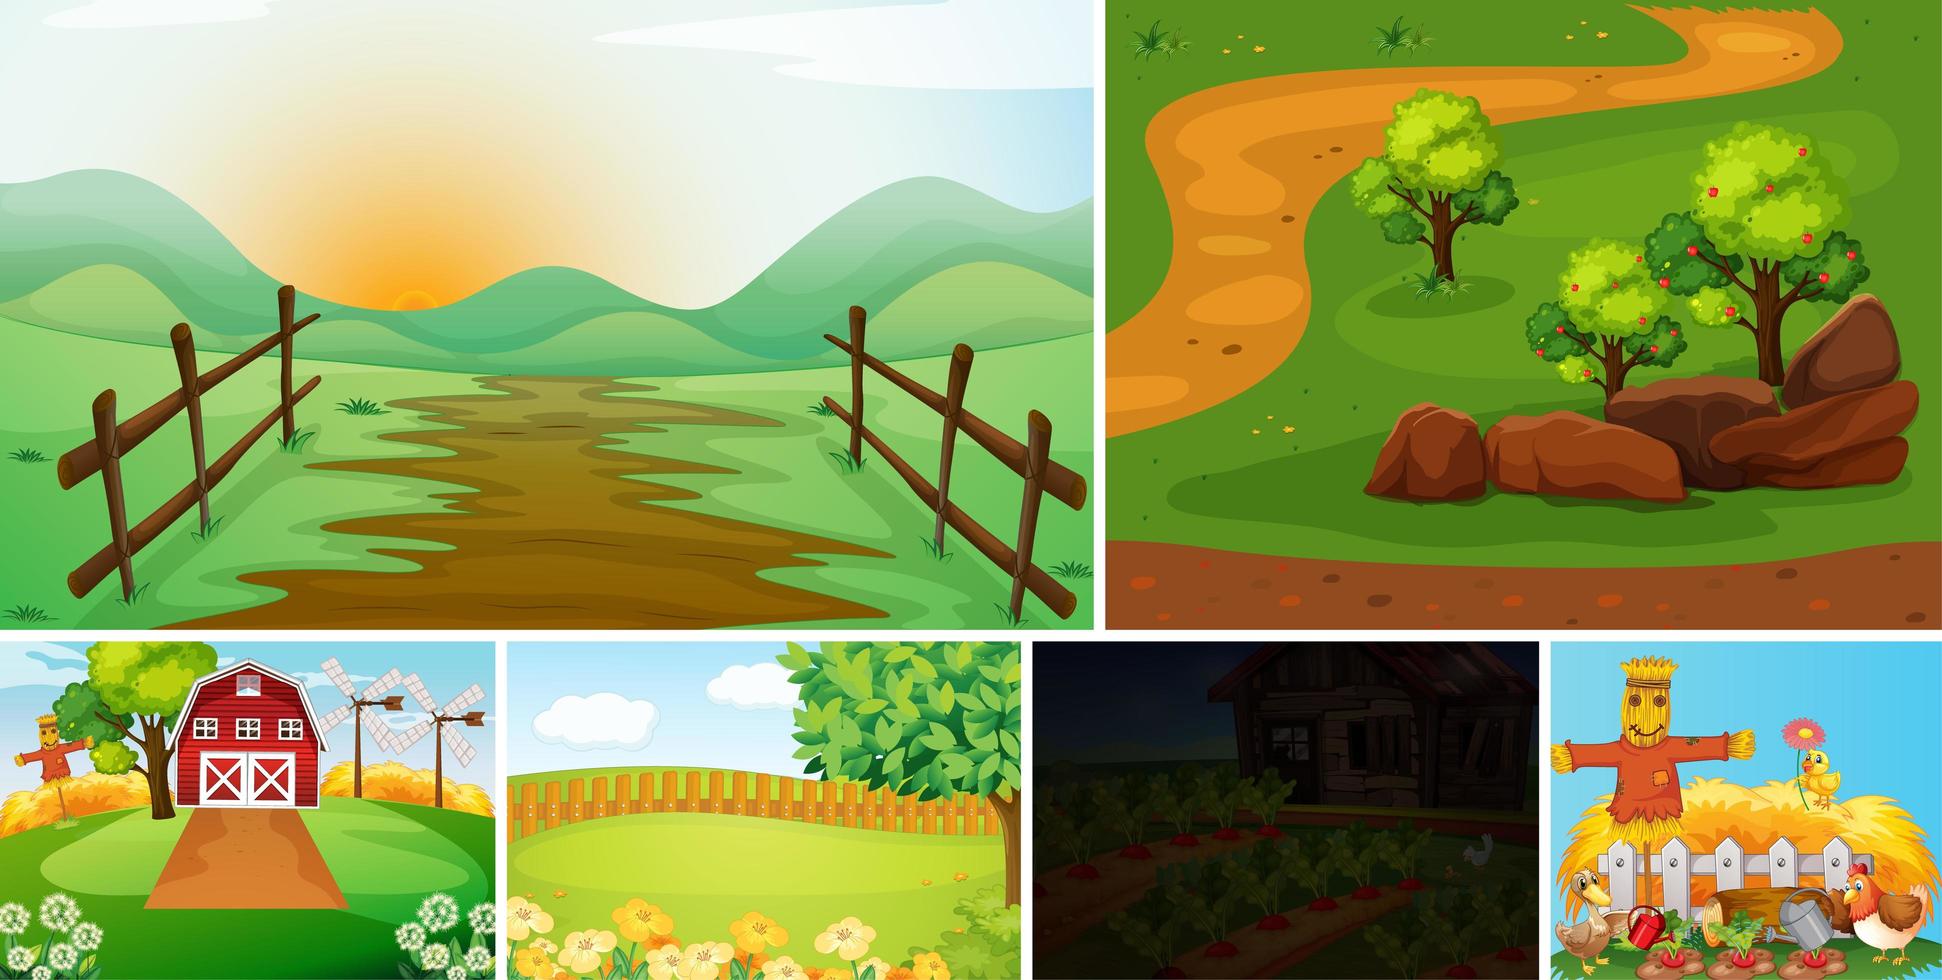 conjunto de estilo de dibujos animados de escena de granja vector